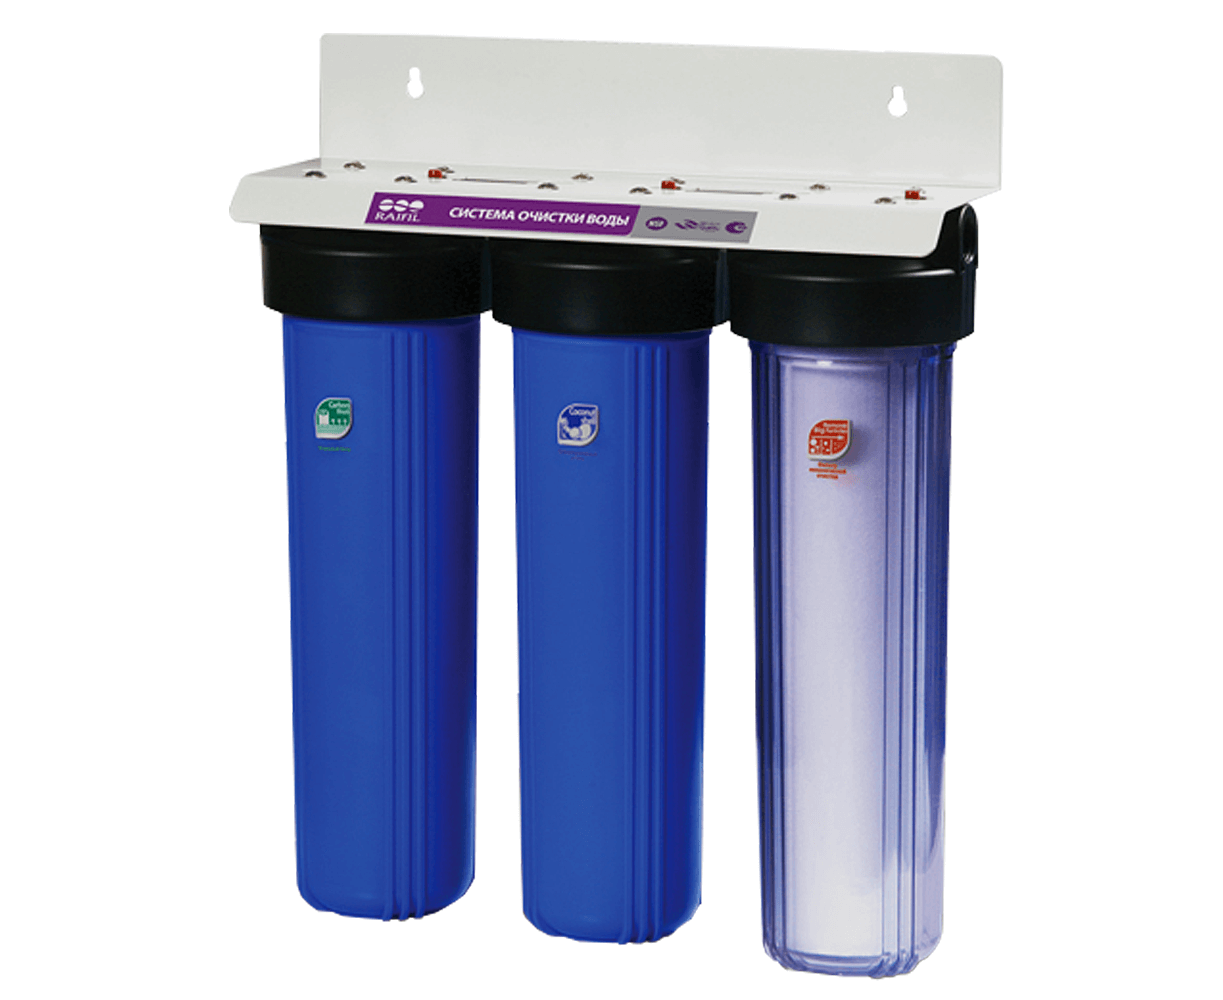 Фильтры для воды саратов. Проточный фильтр RAIFIL PU 908b3-bk1-s-g. Магистральный фильтр bb20 АКВАВИК 1". Фильтр трехступенчатый RAIFIL для воды.